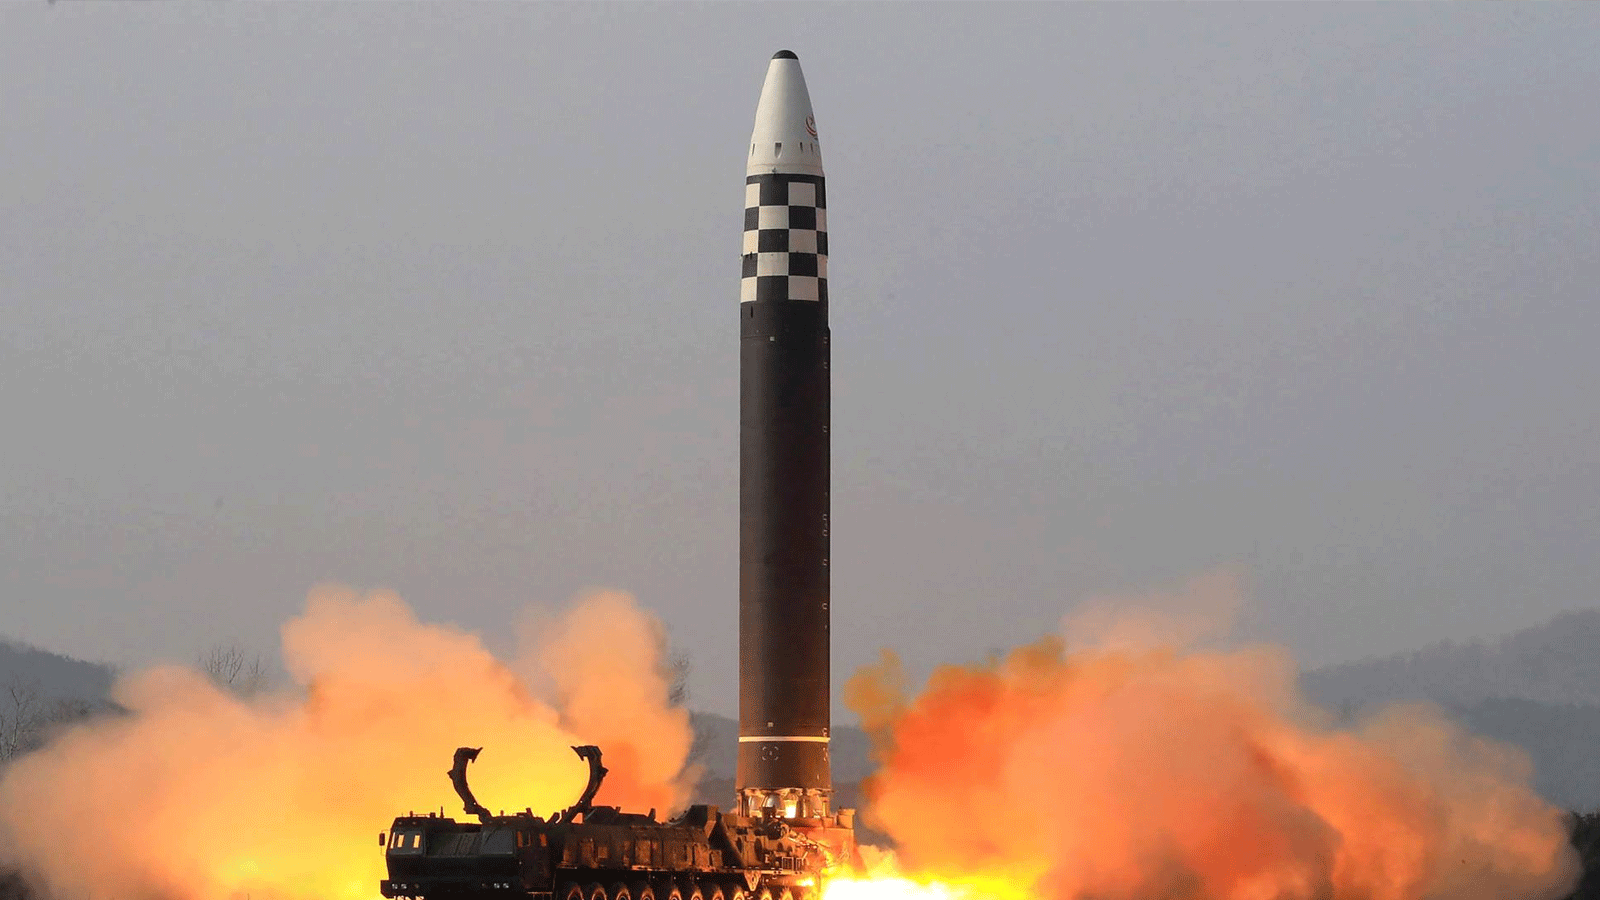 صورة التُقِطَت في 24 آذار\مارس 2022 وتم نشرها من قبل وكالة الأنباء المركزية الكورية الرسمية في كوريا الشمالية (KCNA) في 25 آذار\مارس 2022، للاختبار التجريبي لنوع جديد من الصواريخ الباليستية العابرة للقارات (ICBM)، وهو صاروخ هواسونغفو- 17 في موقع لم يكشف عنه في كوريا الشمالية.